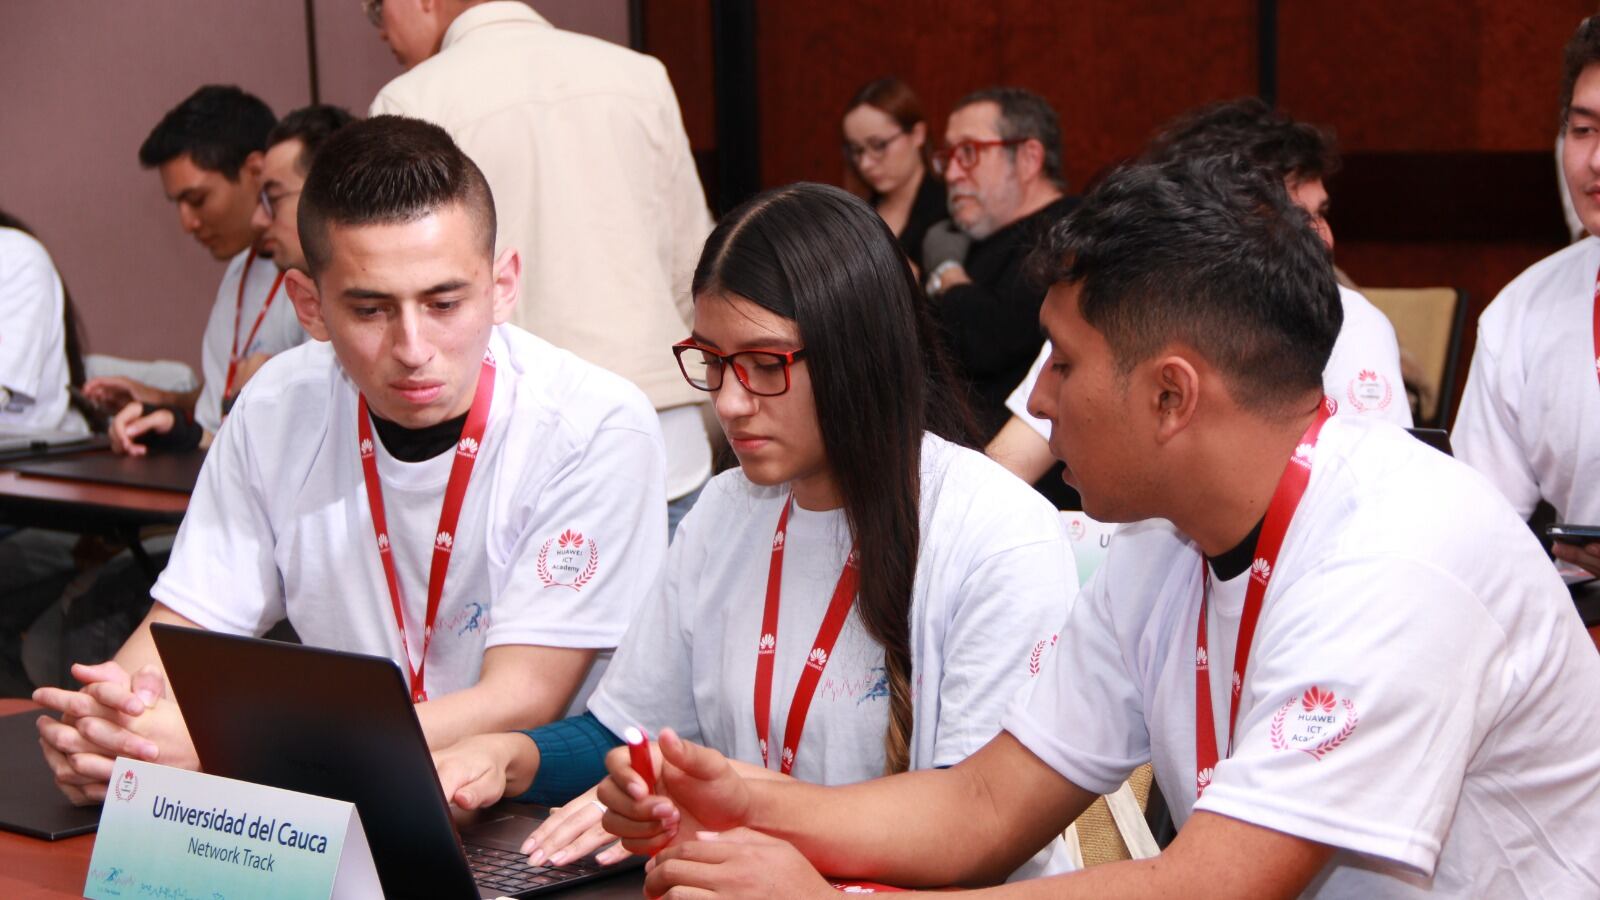 27 estudiantes de diferentes regiones del país estuvieron reunidos en la final nacional del ICT Competition, donde por medio de una prueba de conocimientos técnicos, demostraron sus habilidades para llegar a la final latinoamericana.